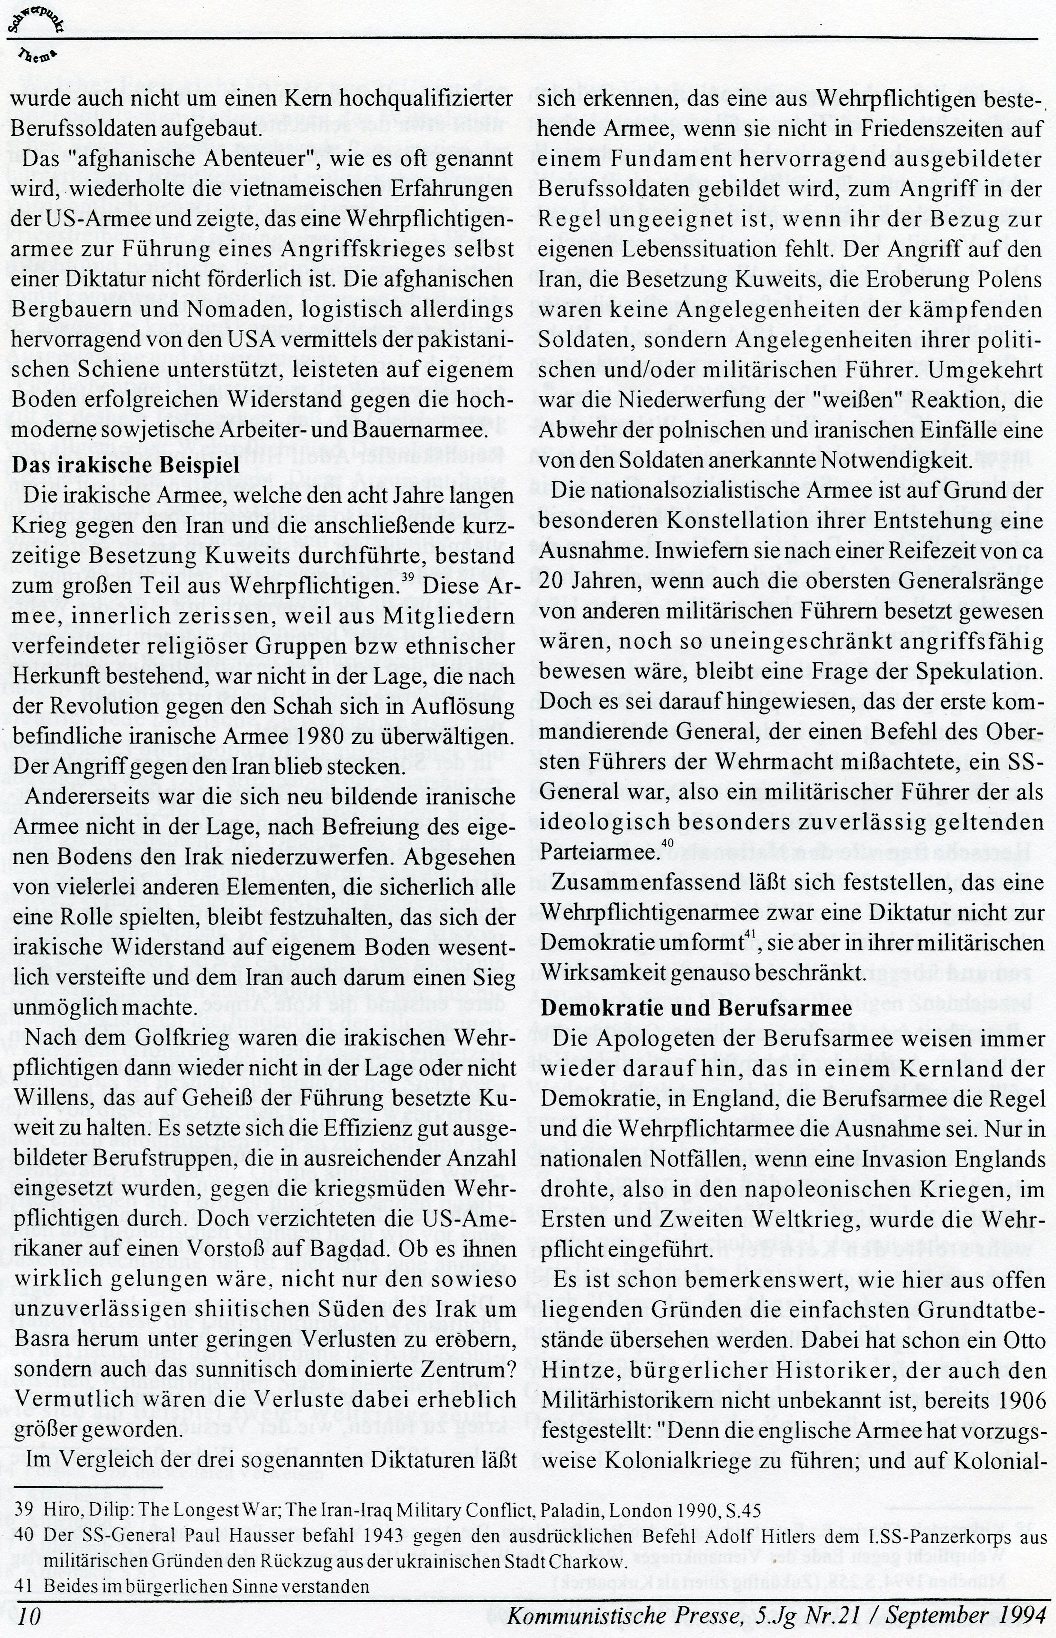 Gelsenkirchen_Kommunistische_Presse_1994_21_Beilage_010